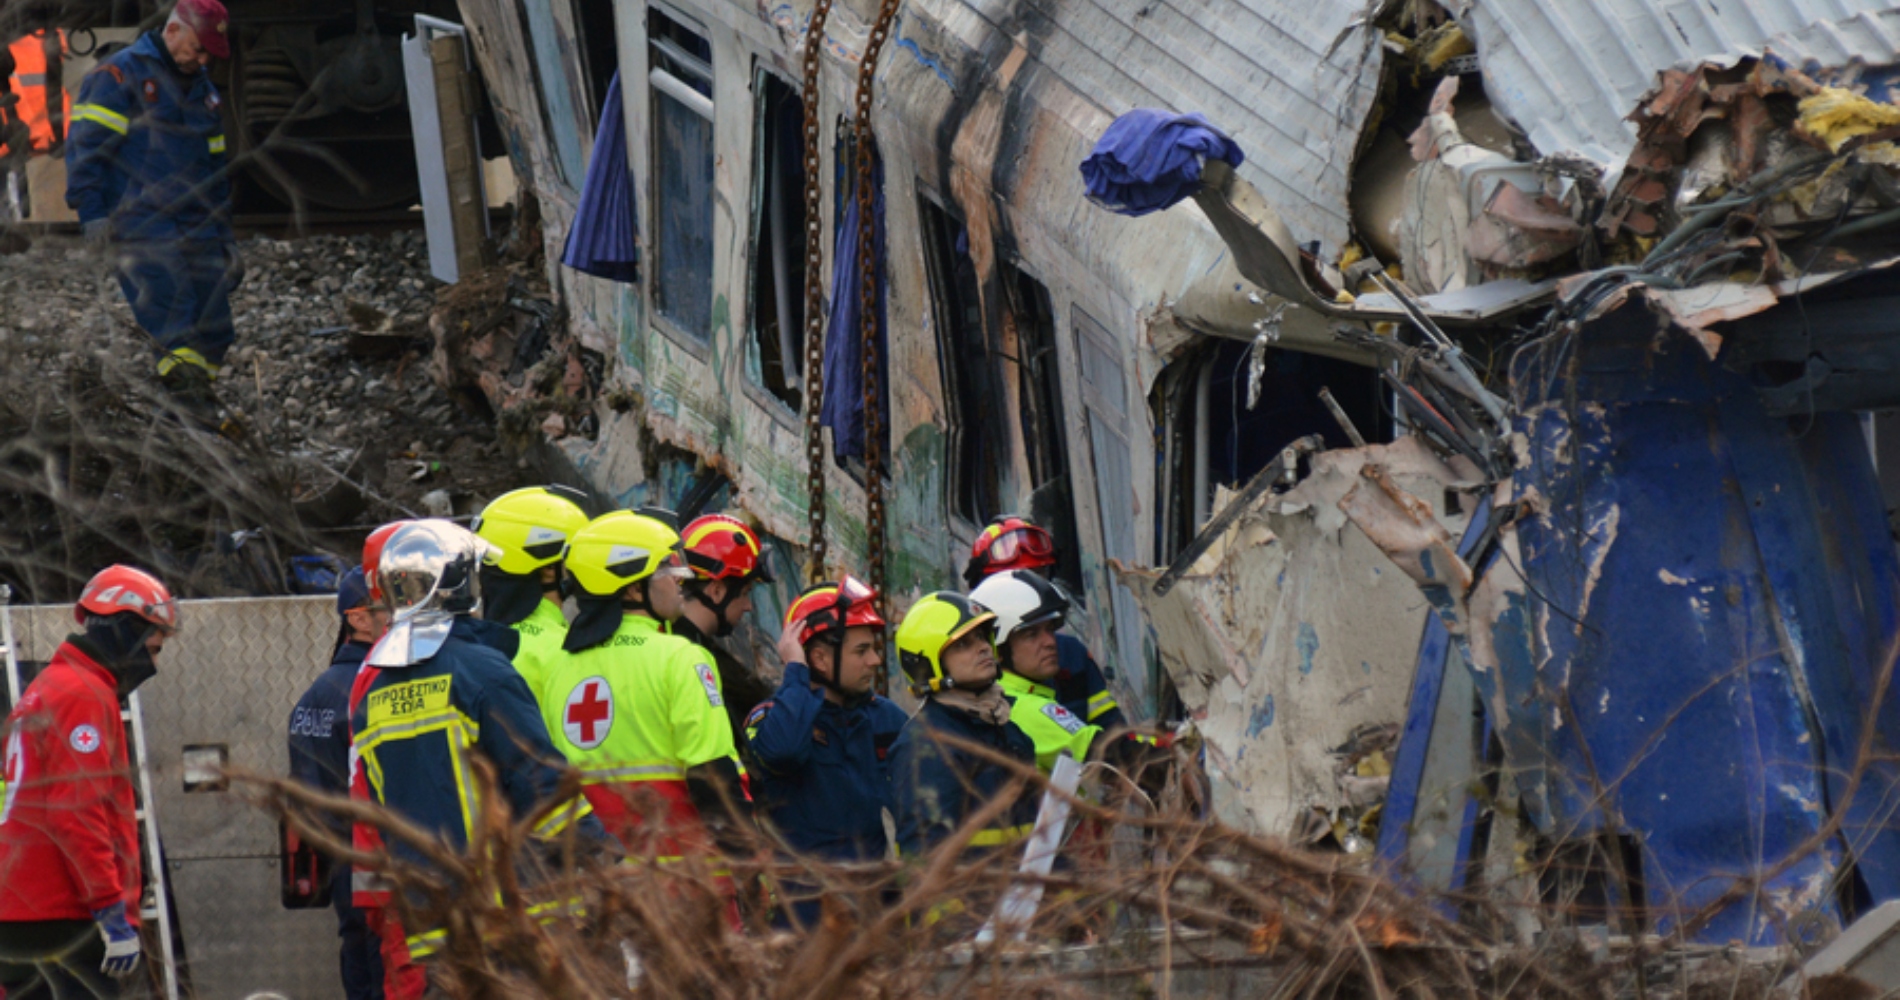 Σιδηροδρομικό δυστύχημα στα Τέμπη: 57 επιβεβαιωμένοι νεκροί, 36 νεκροί έχουν ταυτοποιηθεί, 38 επιβάτες νοσηλεύονται